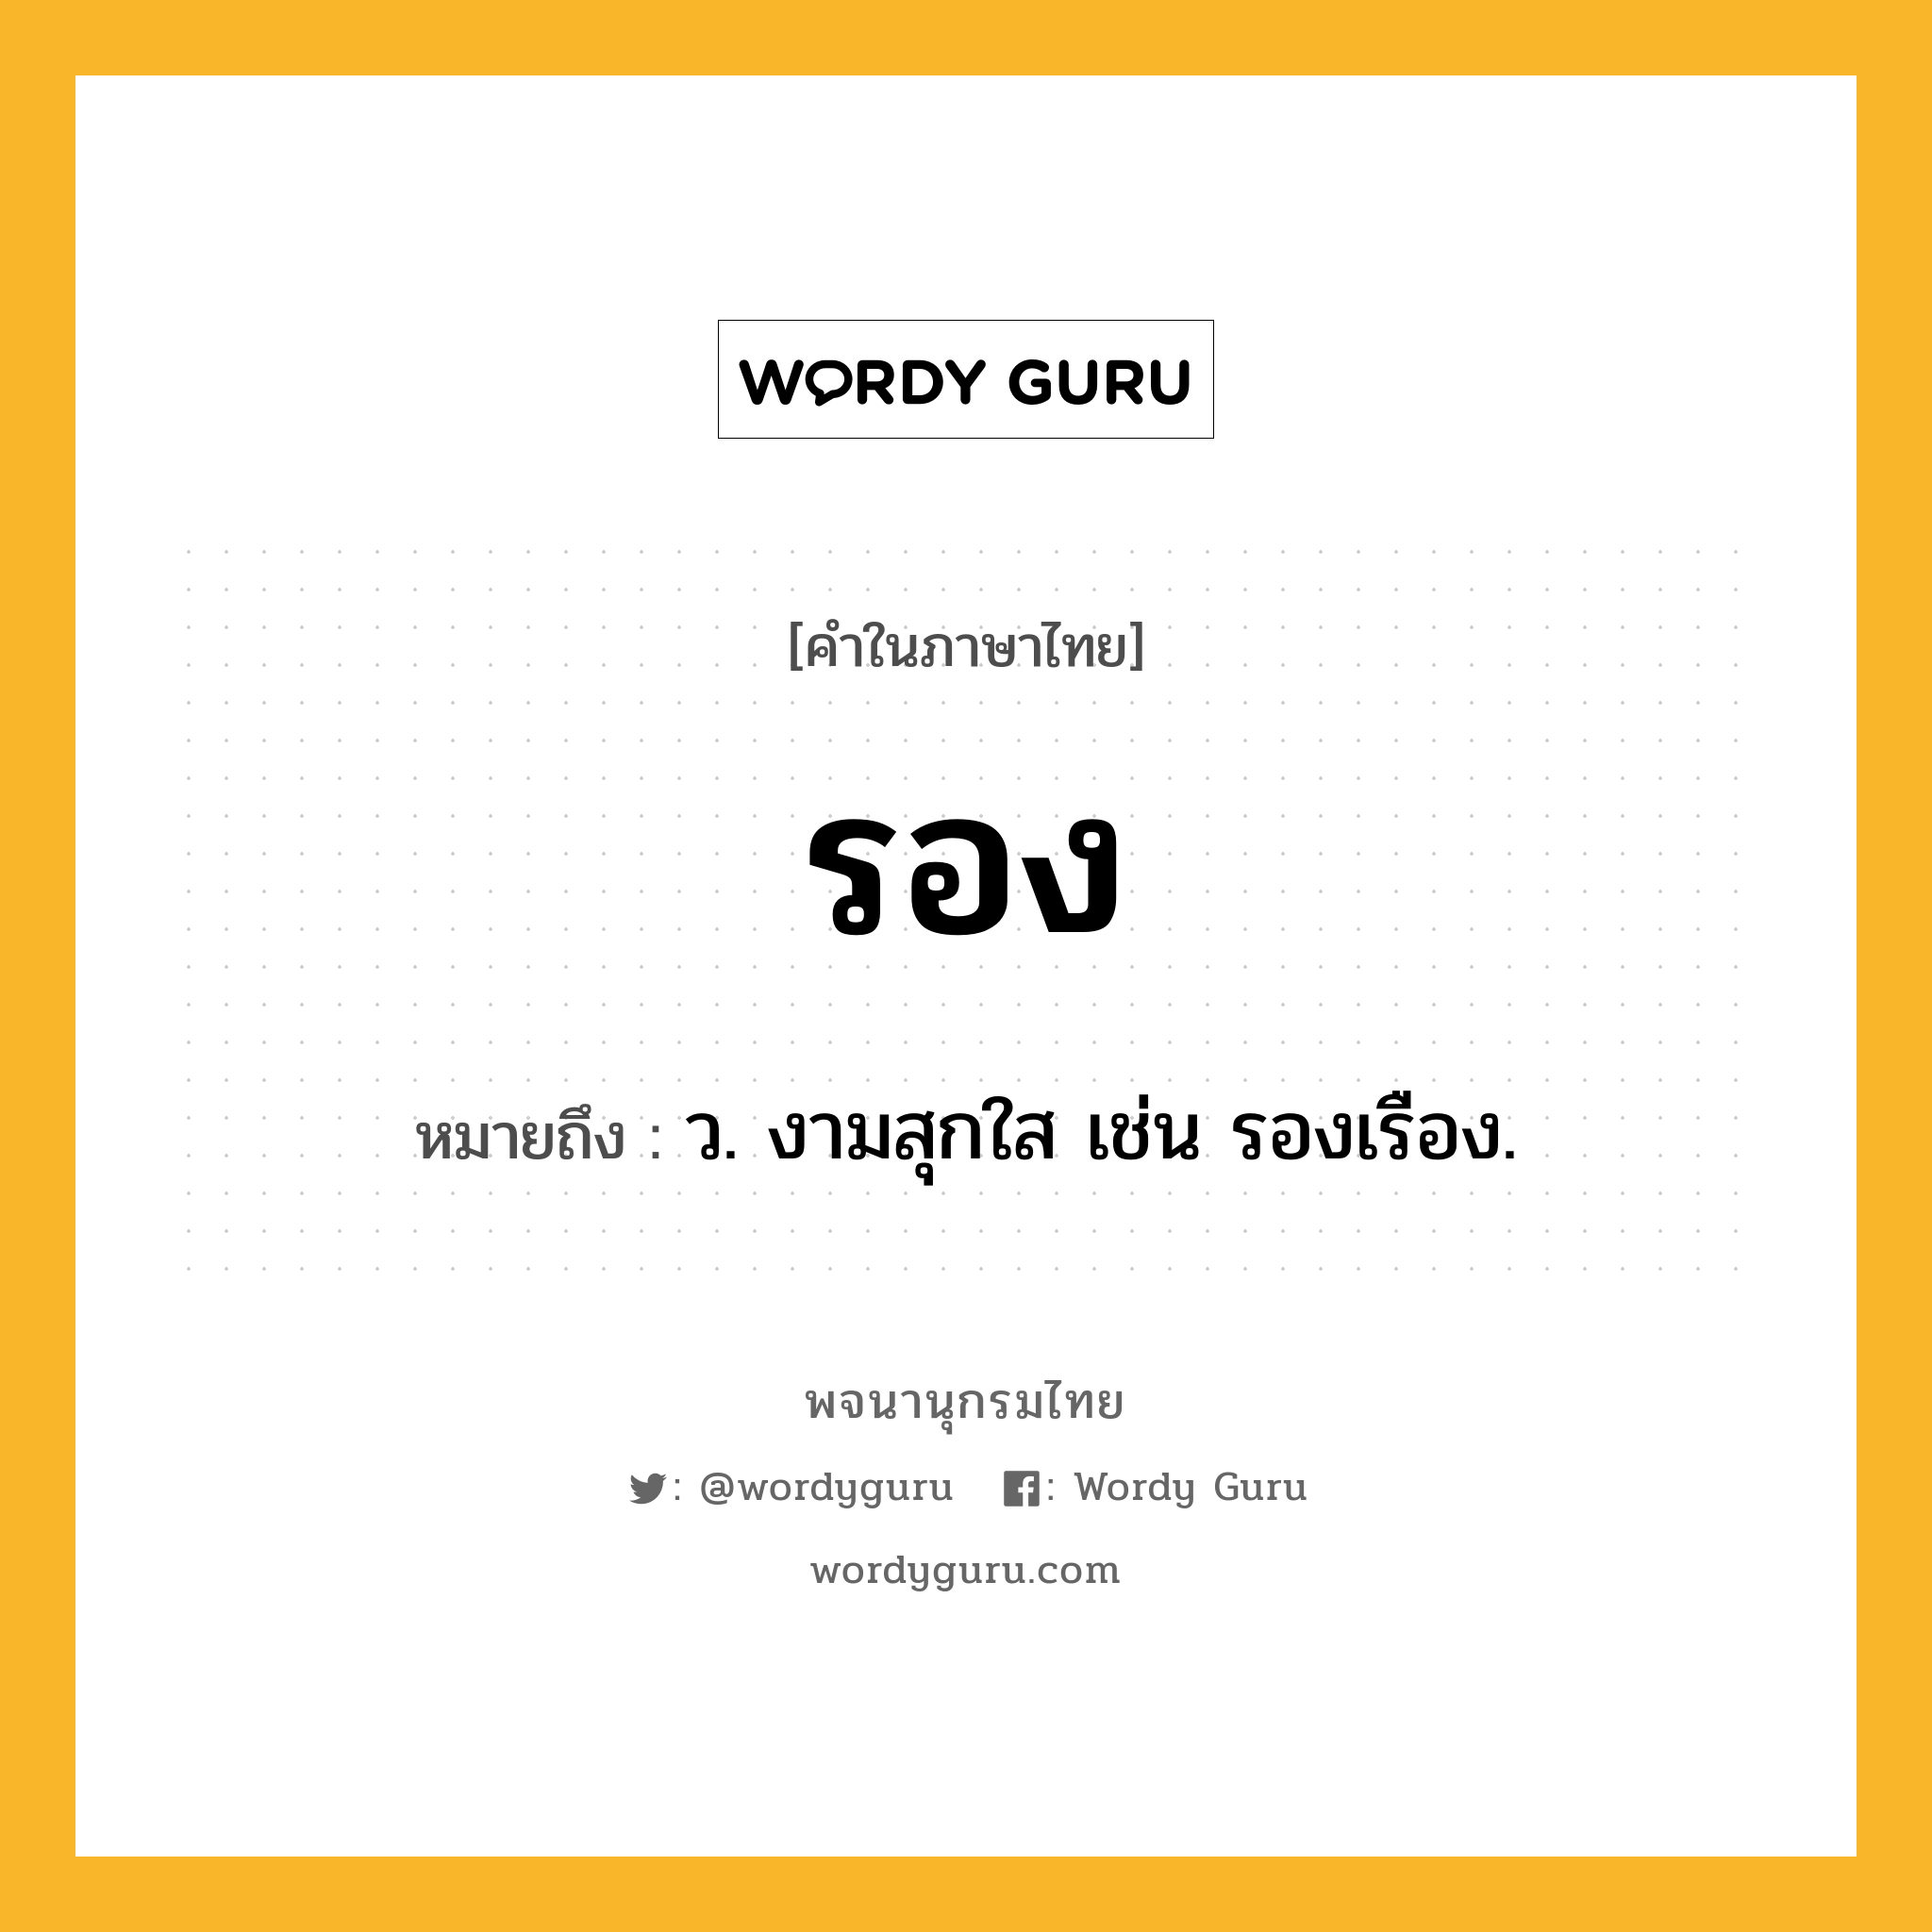 รอง หมายถึงอะไร?, คำในภาษาไทย รอง หมายถึง ว. งามสุกใส เช่น รองเรือง.